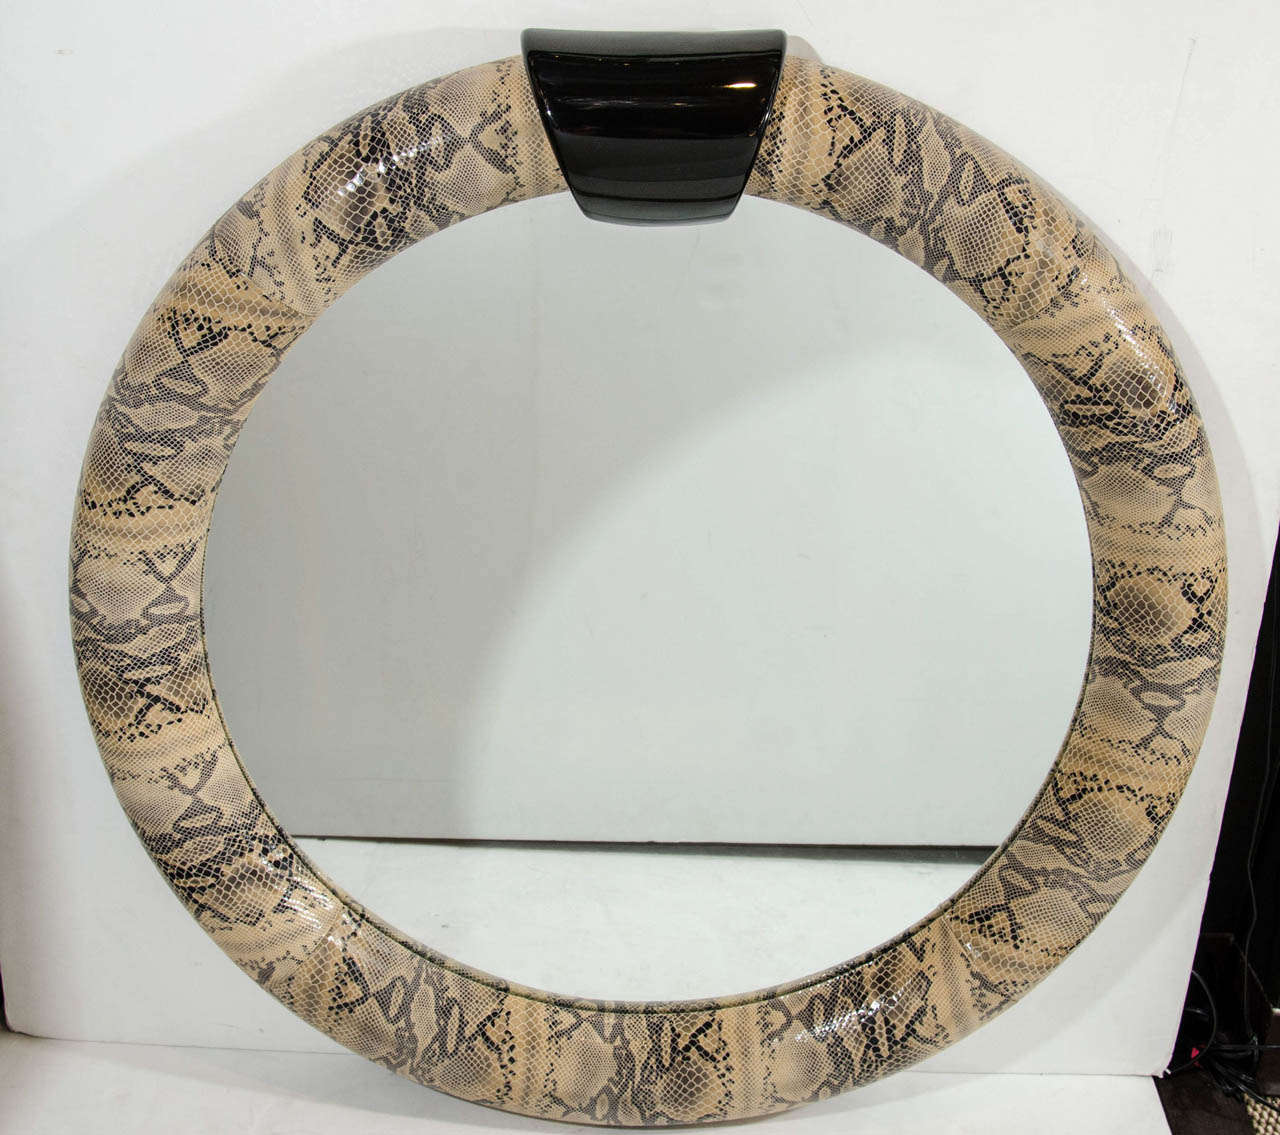 1970er Jahre Runder Spiegel in geprägtem Leder mit Pythonschlangenhautmuster eingewickelt. Mit einem ebonisierten, lackierten Holzgiebel.